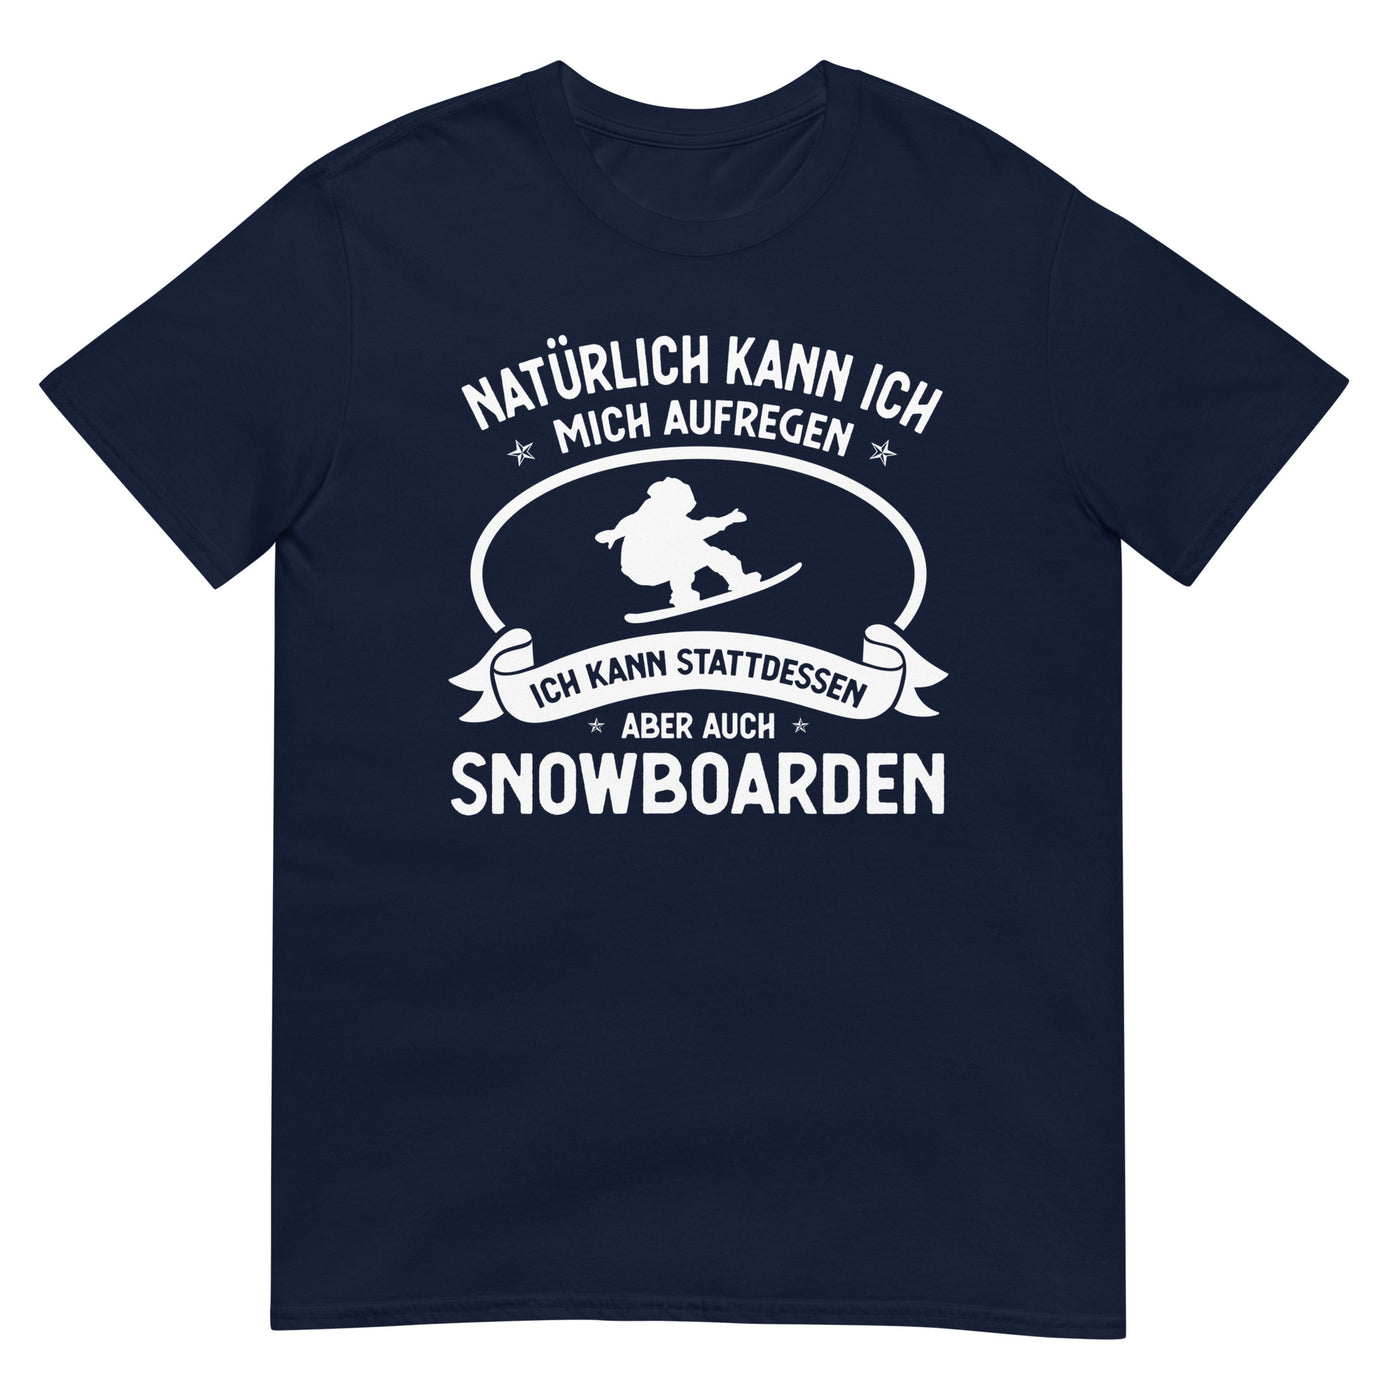 Naturlich Kann Ich Mich Aufregen Ich Kann Stattdessen Aber Auch Snowboarden - T-Shirt (Unisex) snowboarden xxx yyy zzz Navy